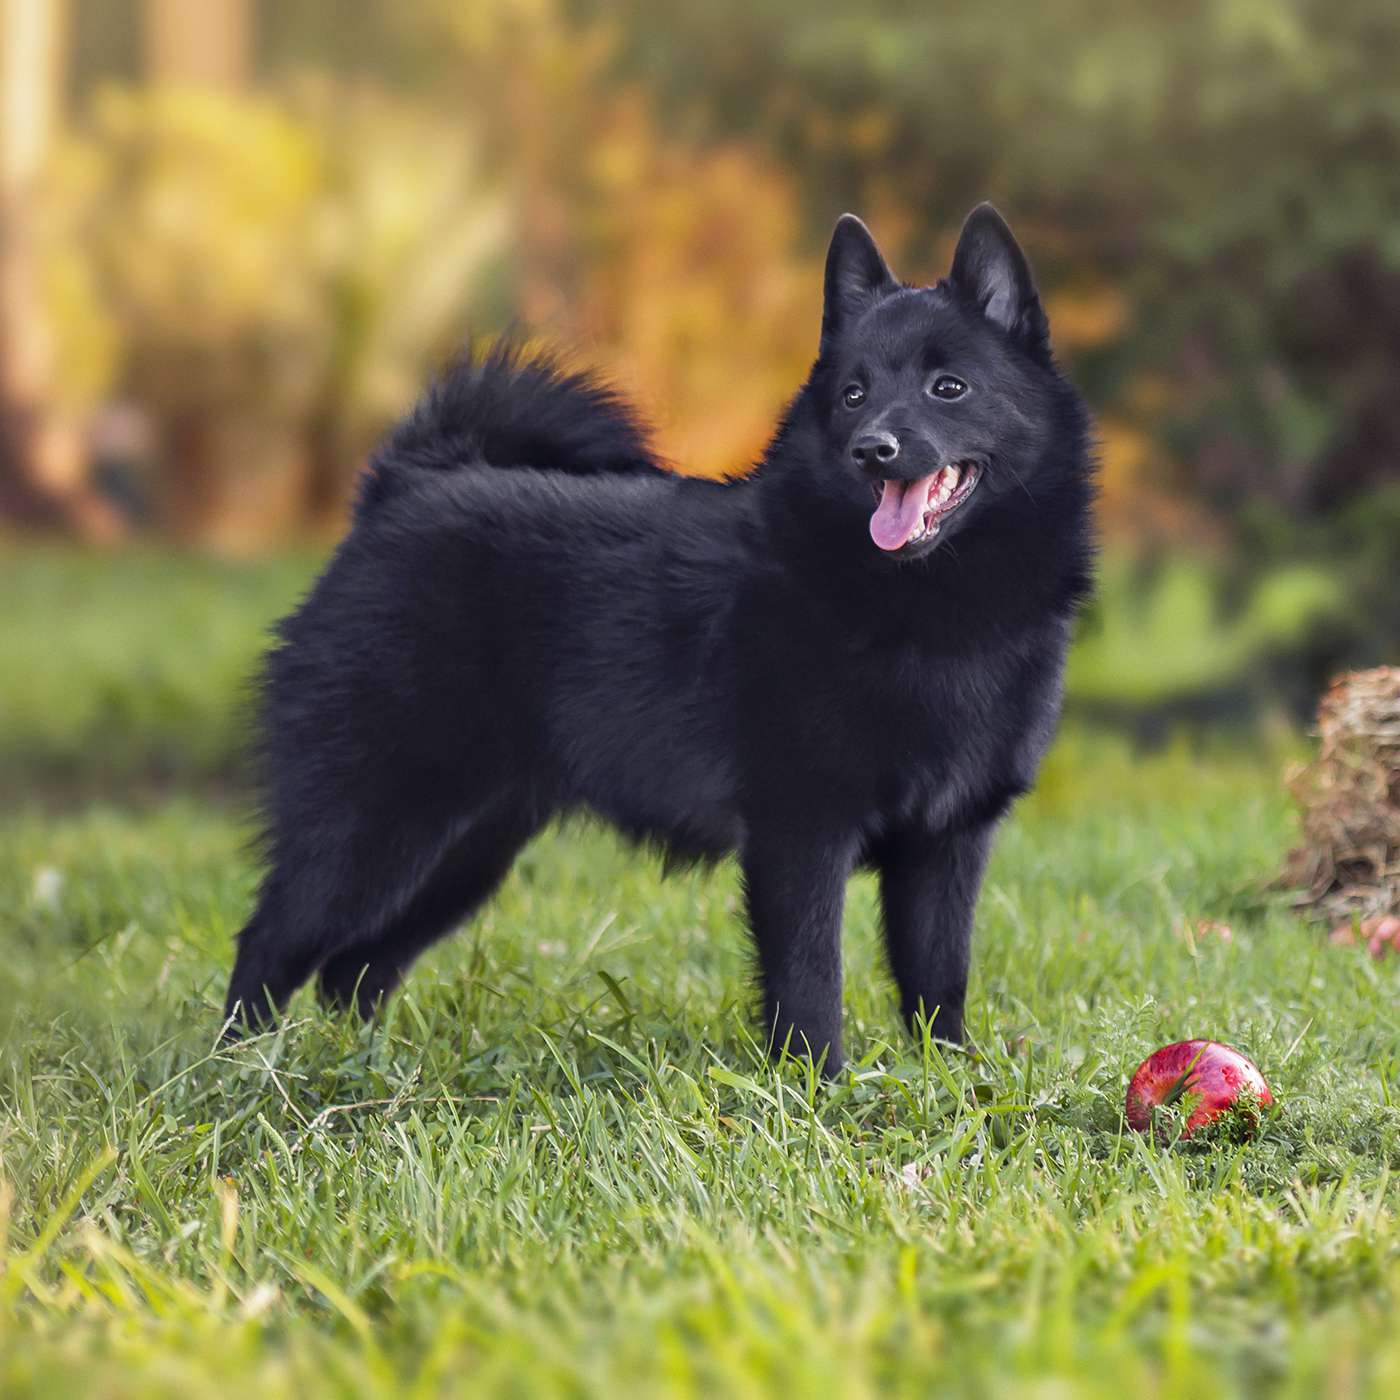 Schipperke dog standing grass with apples